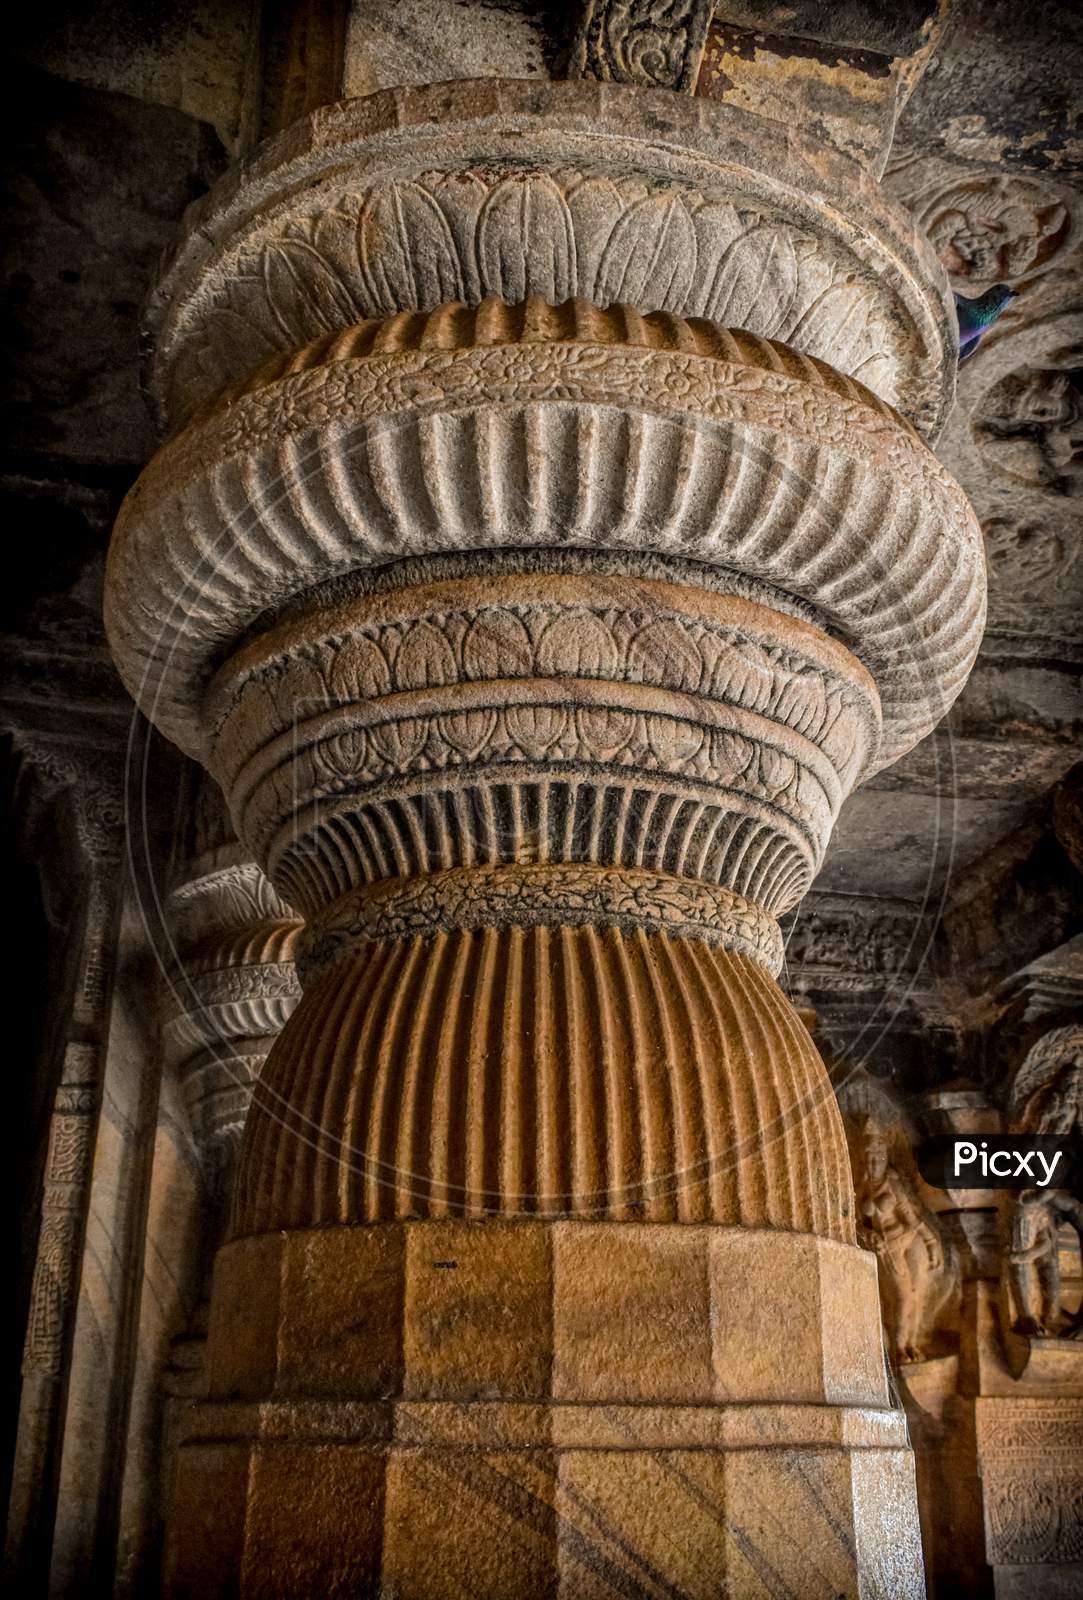 Ancient Indian stone pillar carved design in badami , Karnataka.